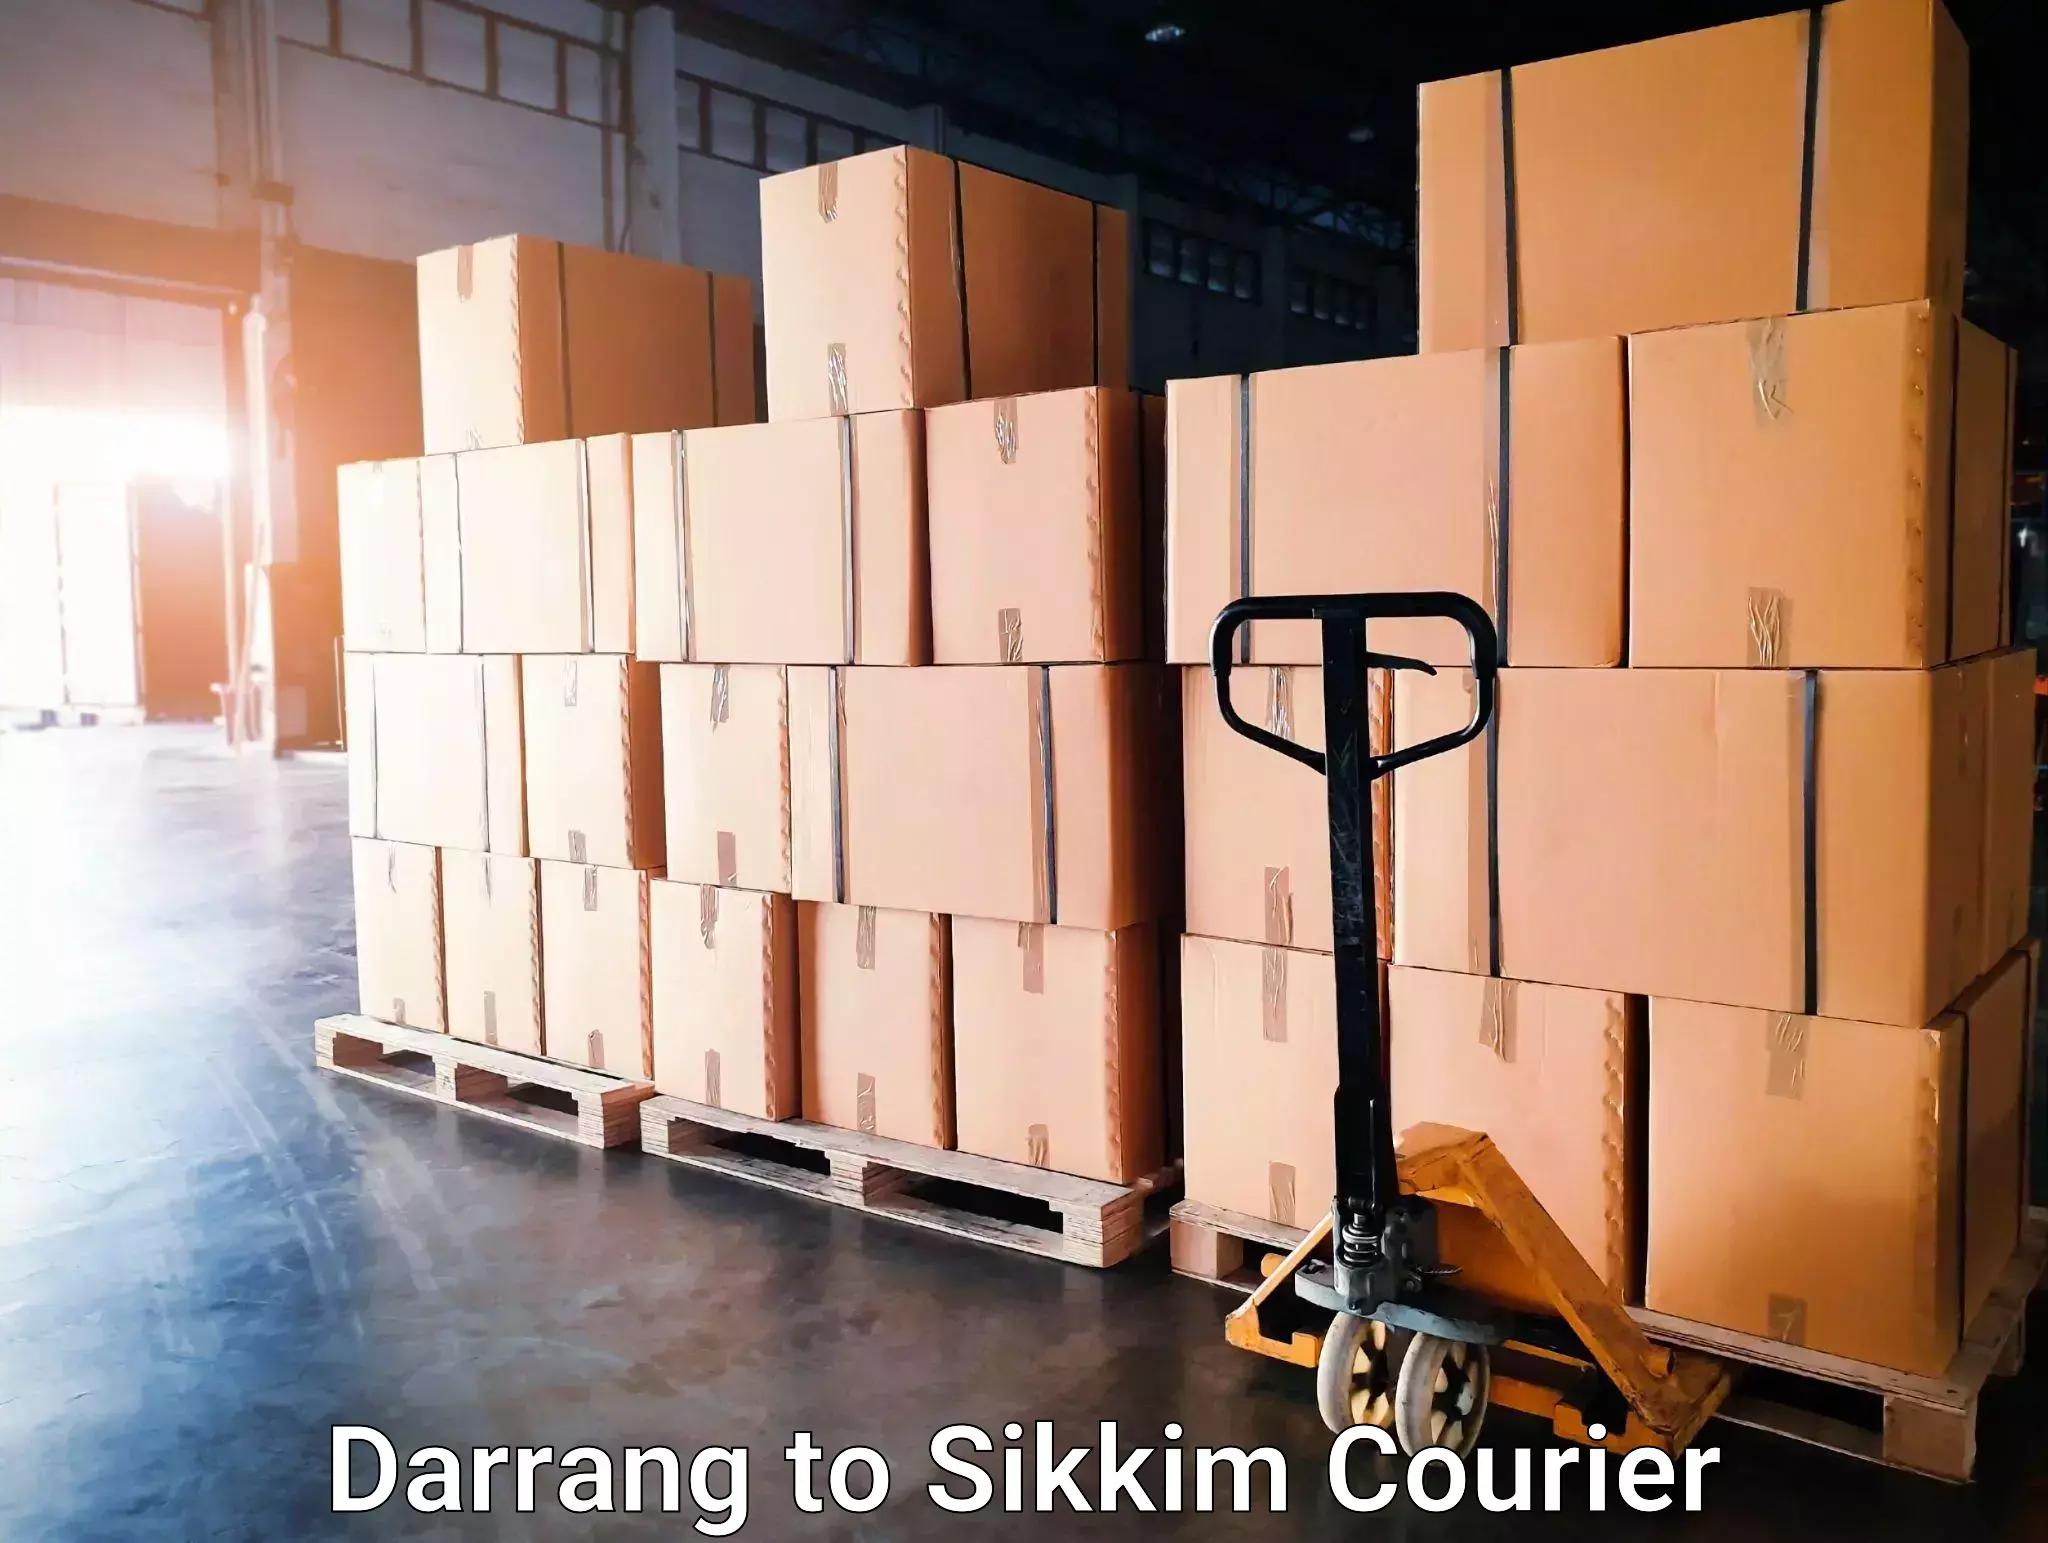 Tech-enabled shipping Darrang to Gangtok